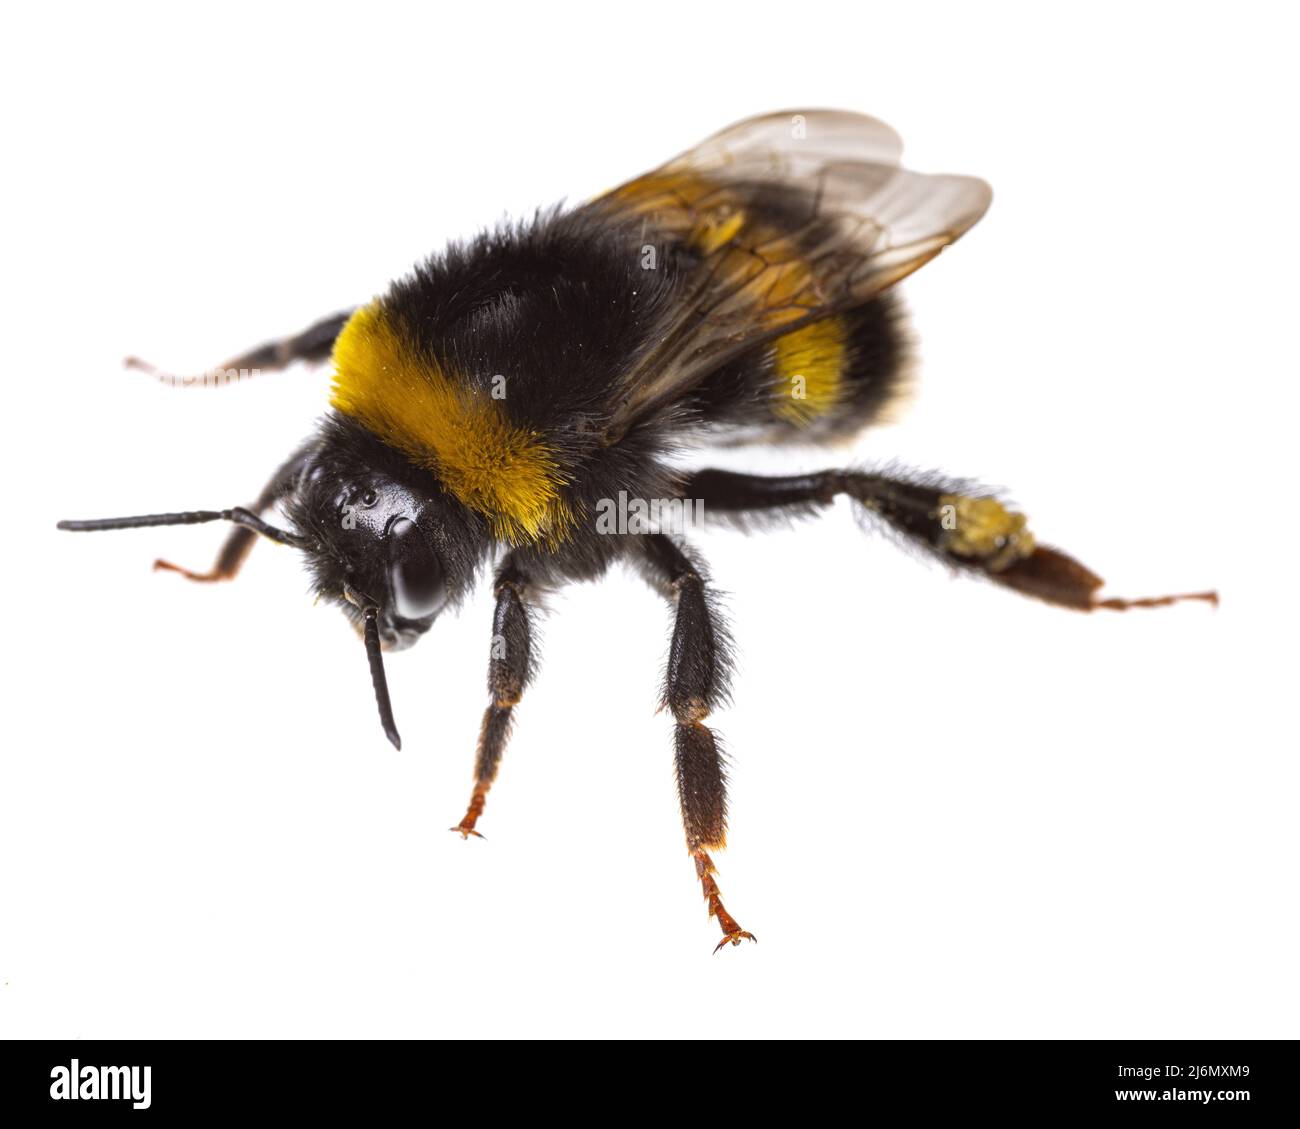 Insectos de europa - abejas: Macro de vista diagonal de abejorros femeninos (complejo Bombus lucorum ) aislados sobre fondo blanco Foto de stock